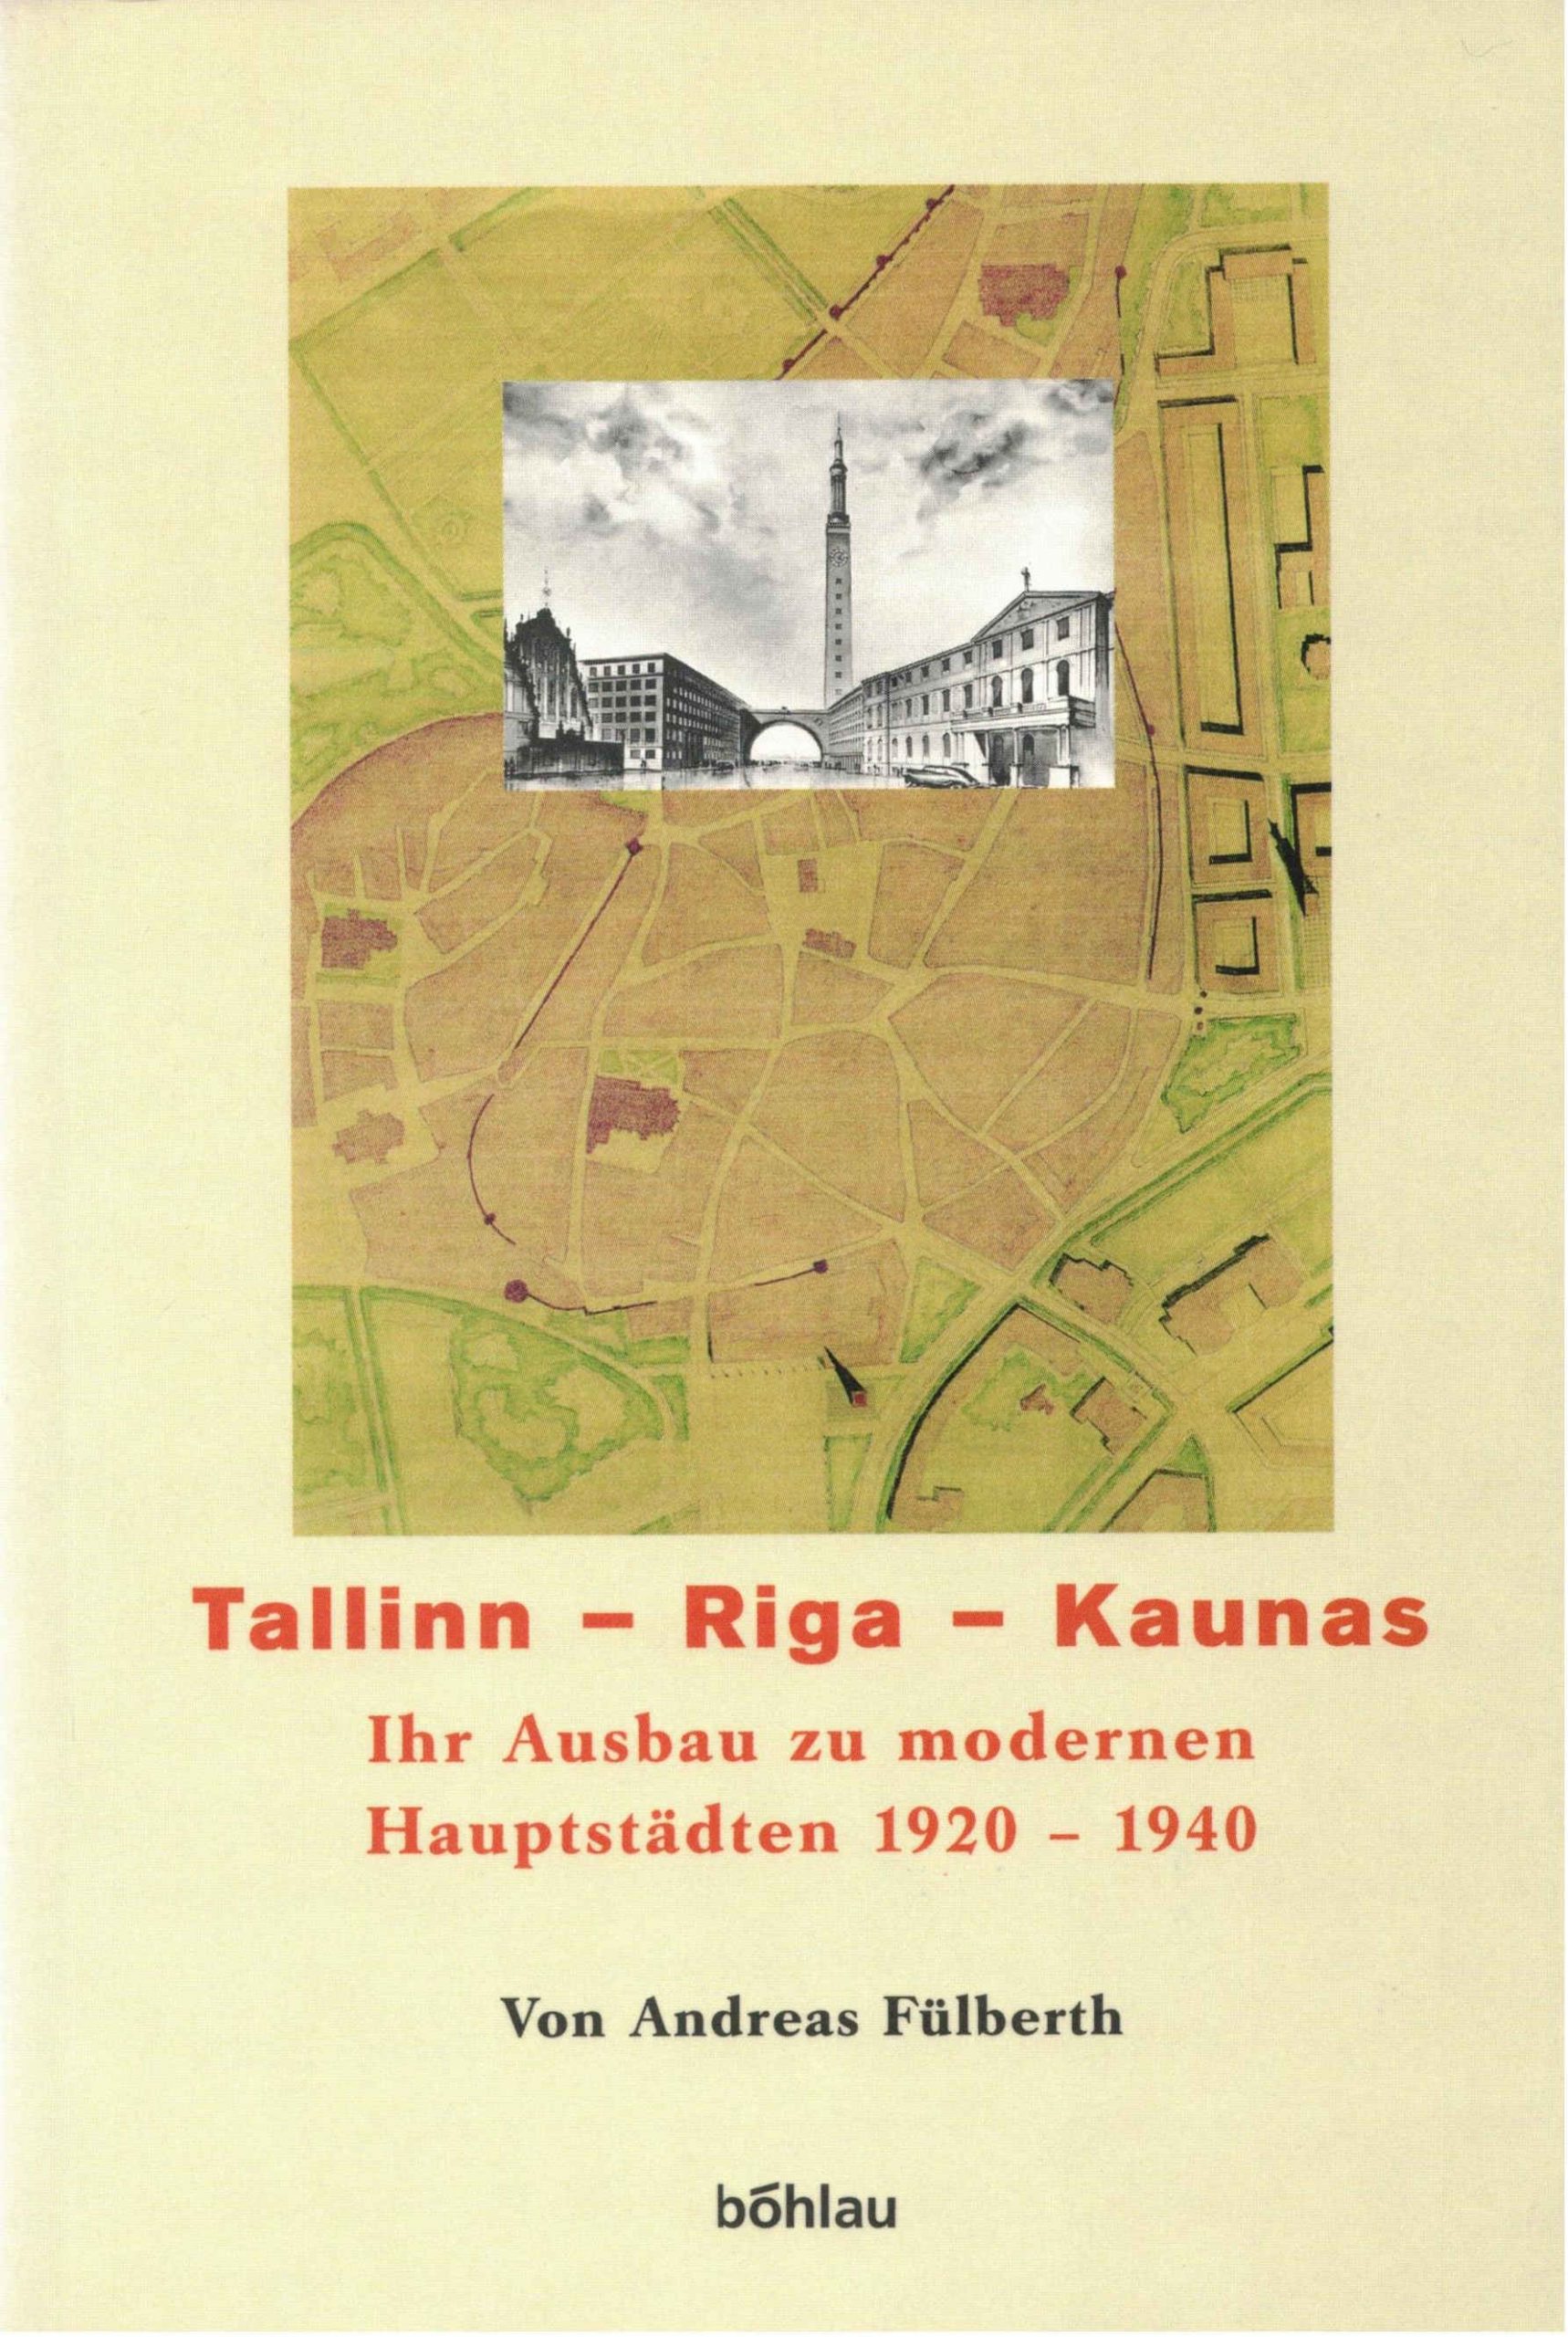 Das Baltikum in Geschichte und Gegenwart, Band 2